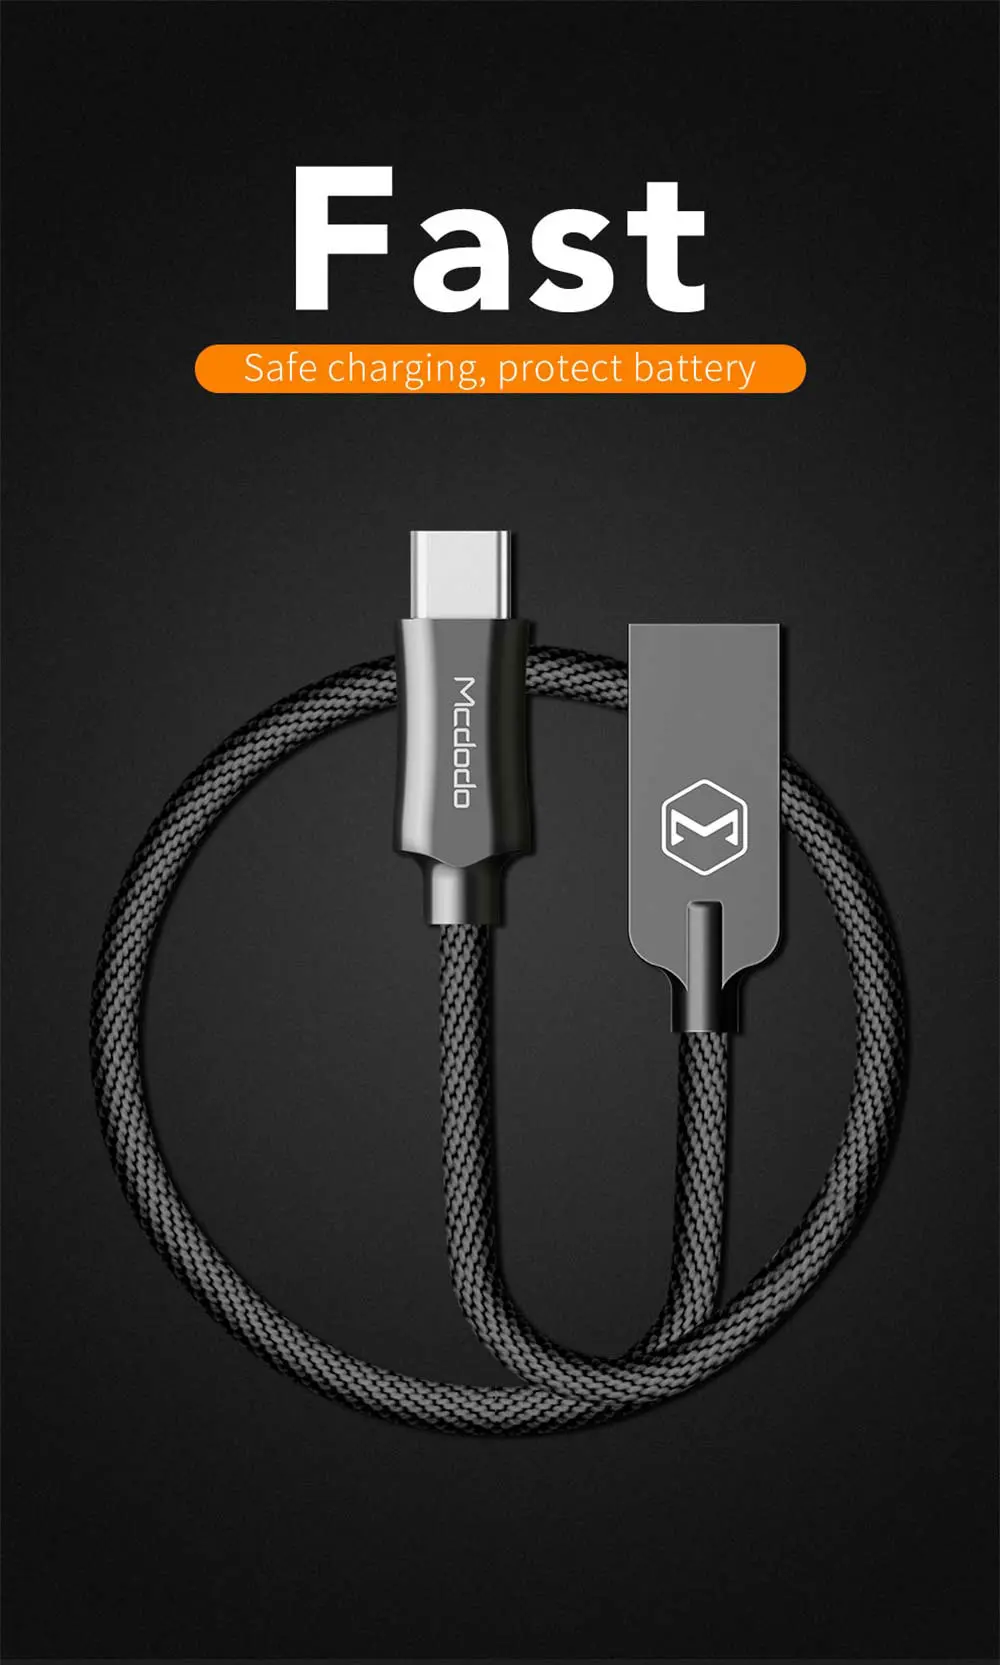 Mcdodo usb type-C кабель 2.4A для xiaomi QC3.0 USB-C кабель для быстрой зарядки мобильного телефона type-C для samsung Galaxy S9 S8 Plus HUAWEI